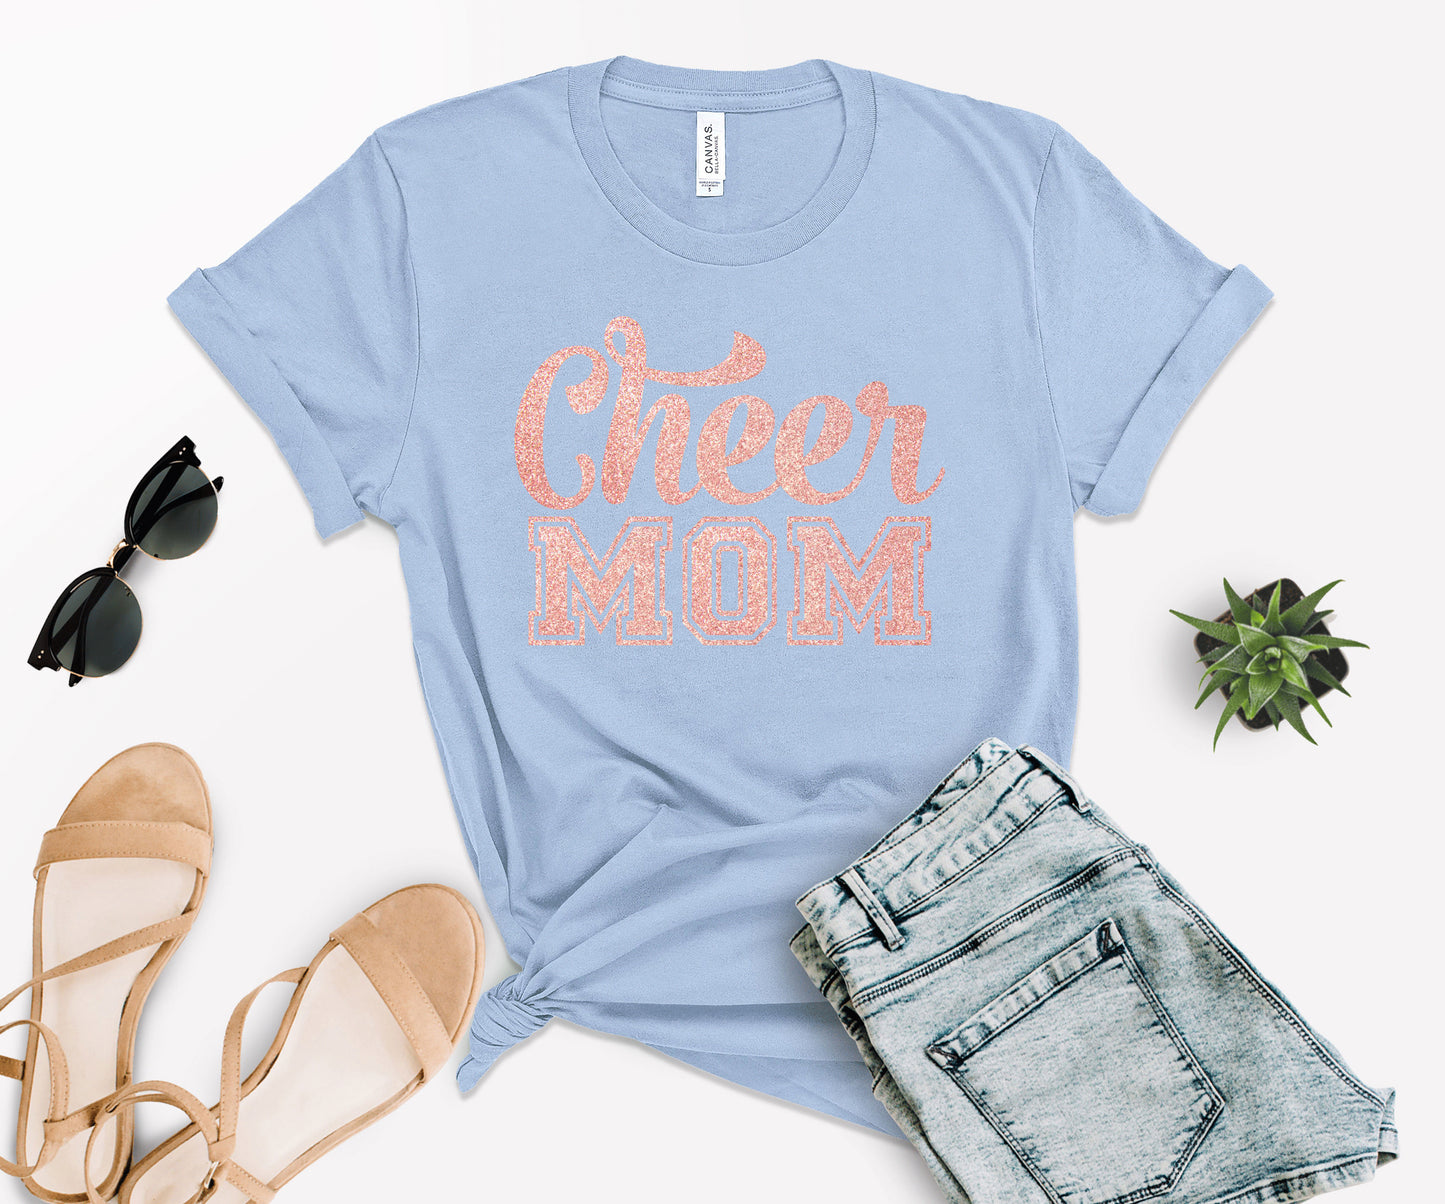 Cheer Mom Shirts, Cheer Mom Shirt Ideas, Cheer Mom Shirt Designs-newamarketing